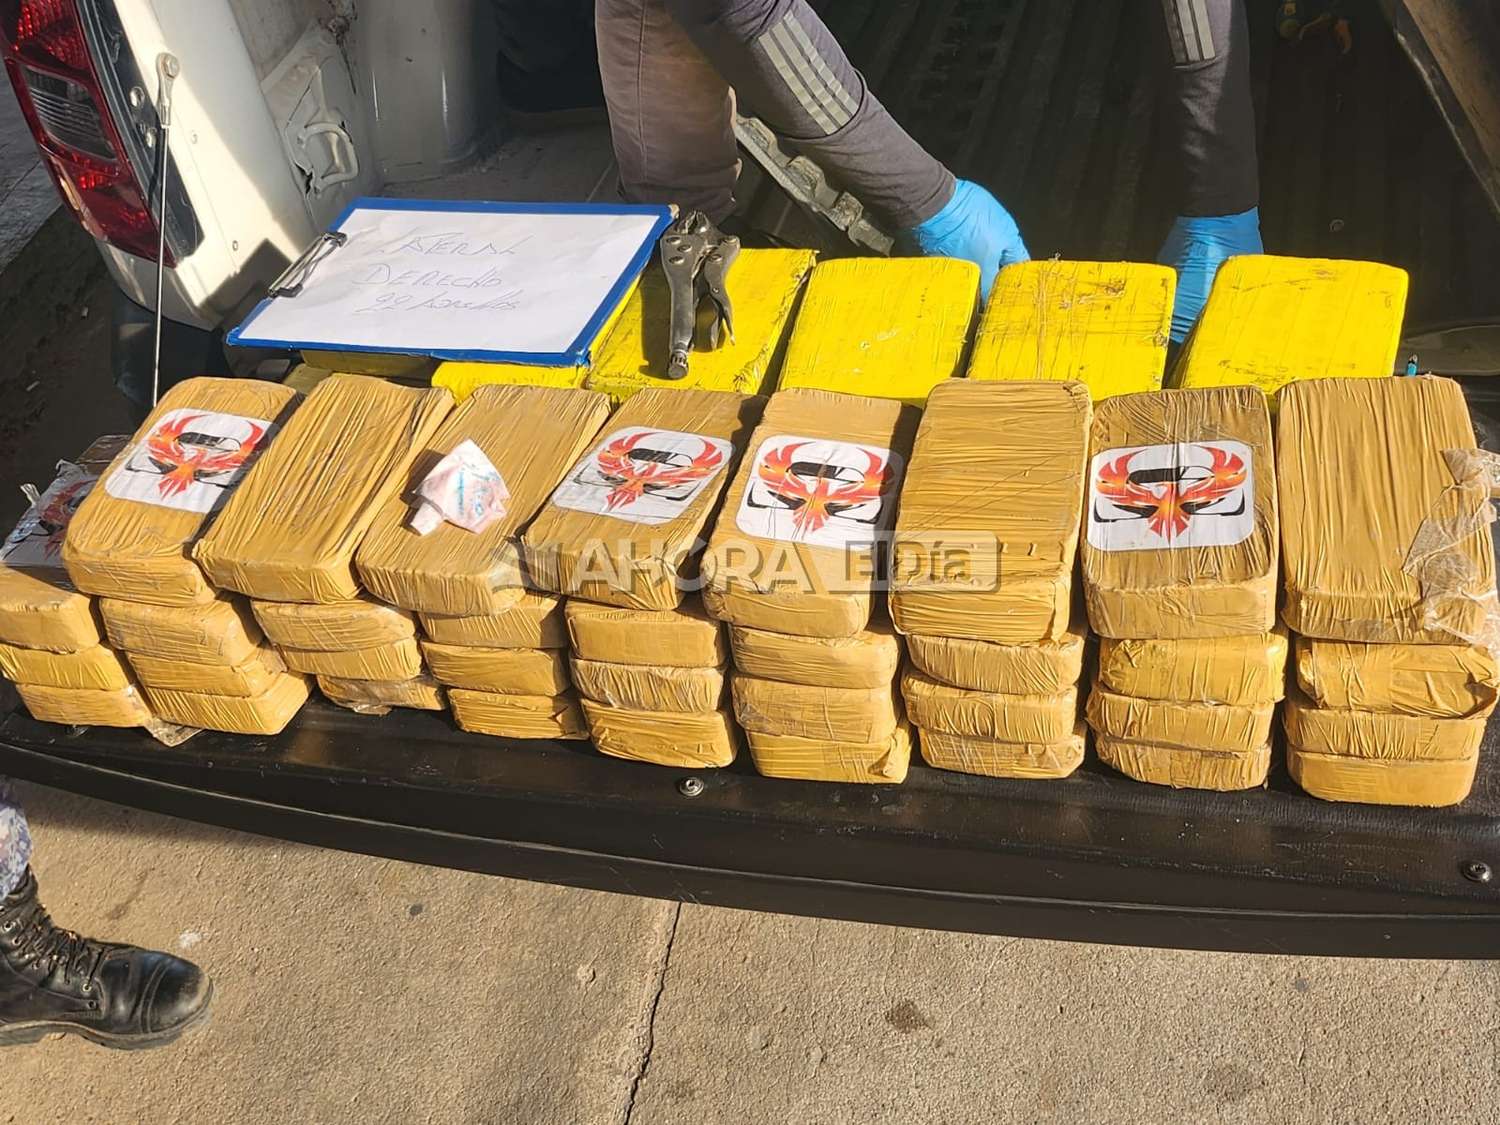 Operativo en la frontera entre Gualeguaychú y Fray Bentos: se habrían encontrado 66 panes con cocaína